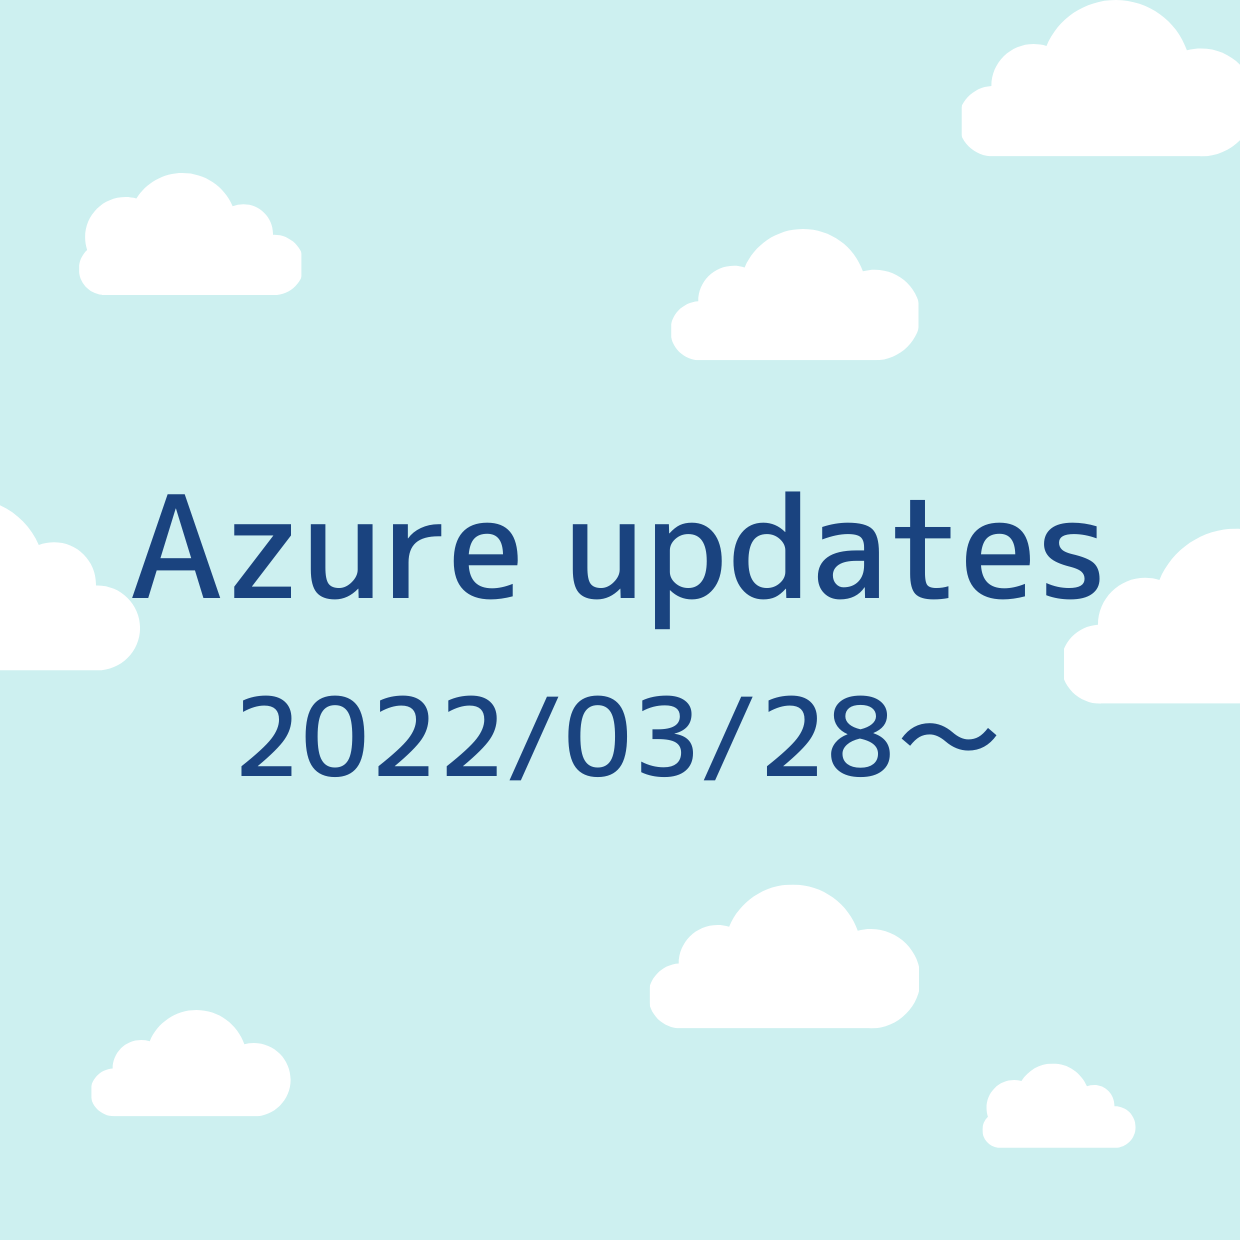 2022/03/28 週の Azure updates 日本語速報